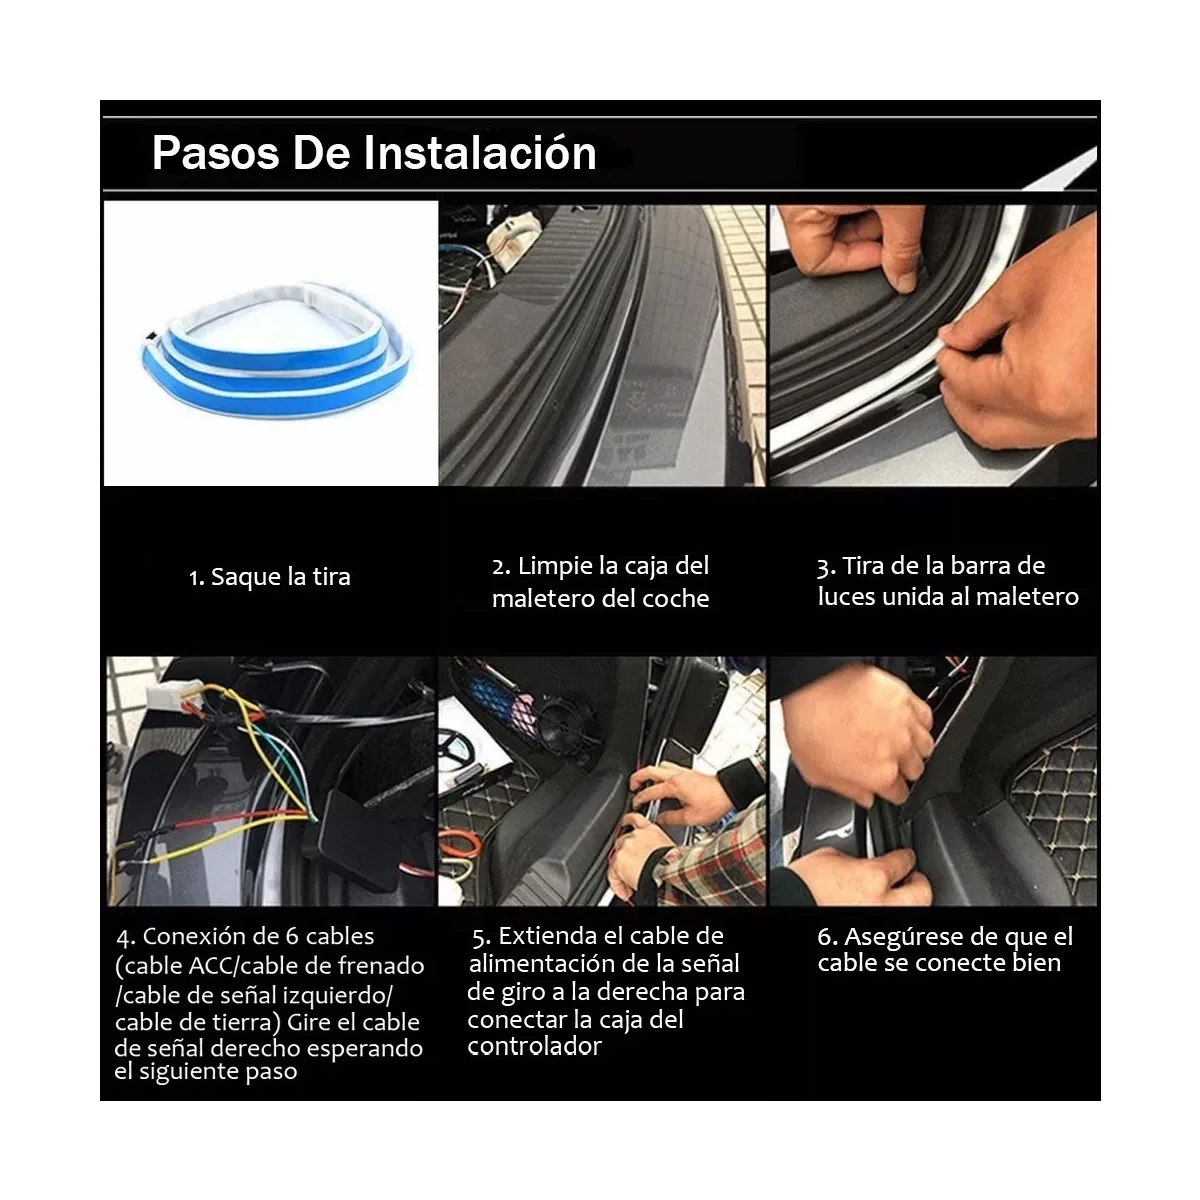 TUTORIAL: Instalar tiras LED Secuenciales en tu Auto, Paso a Paso